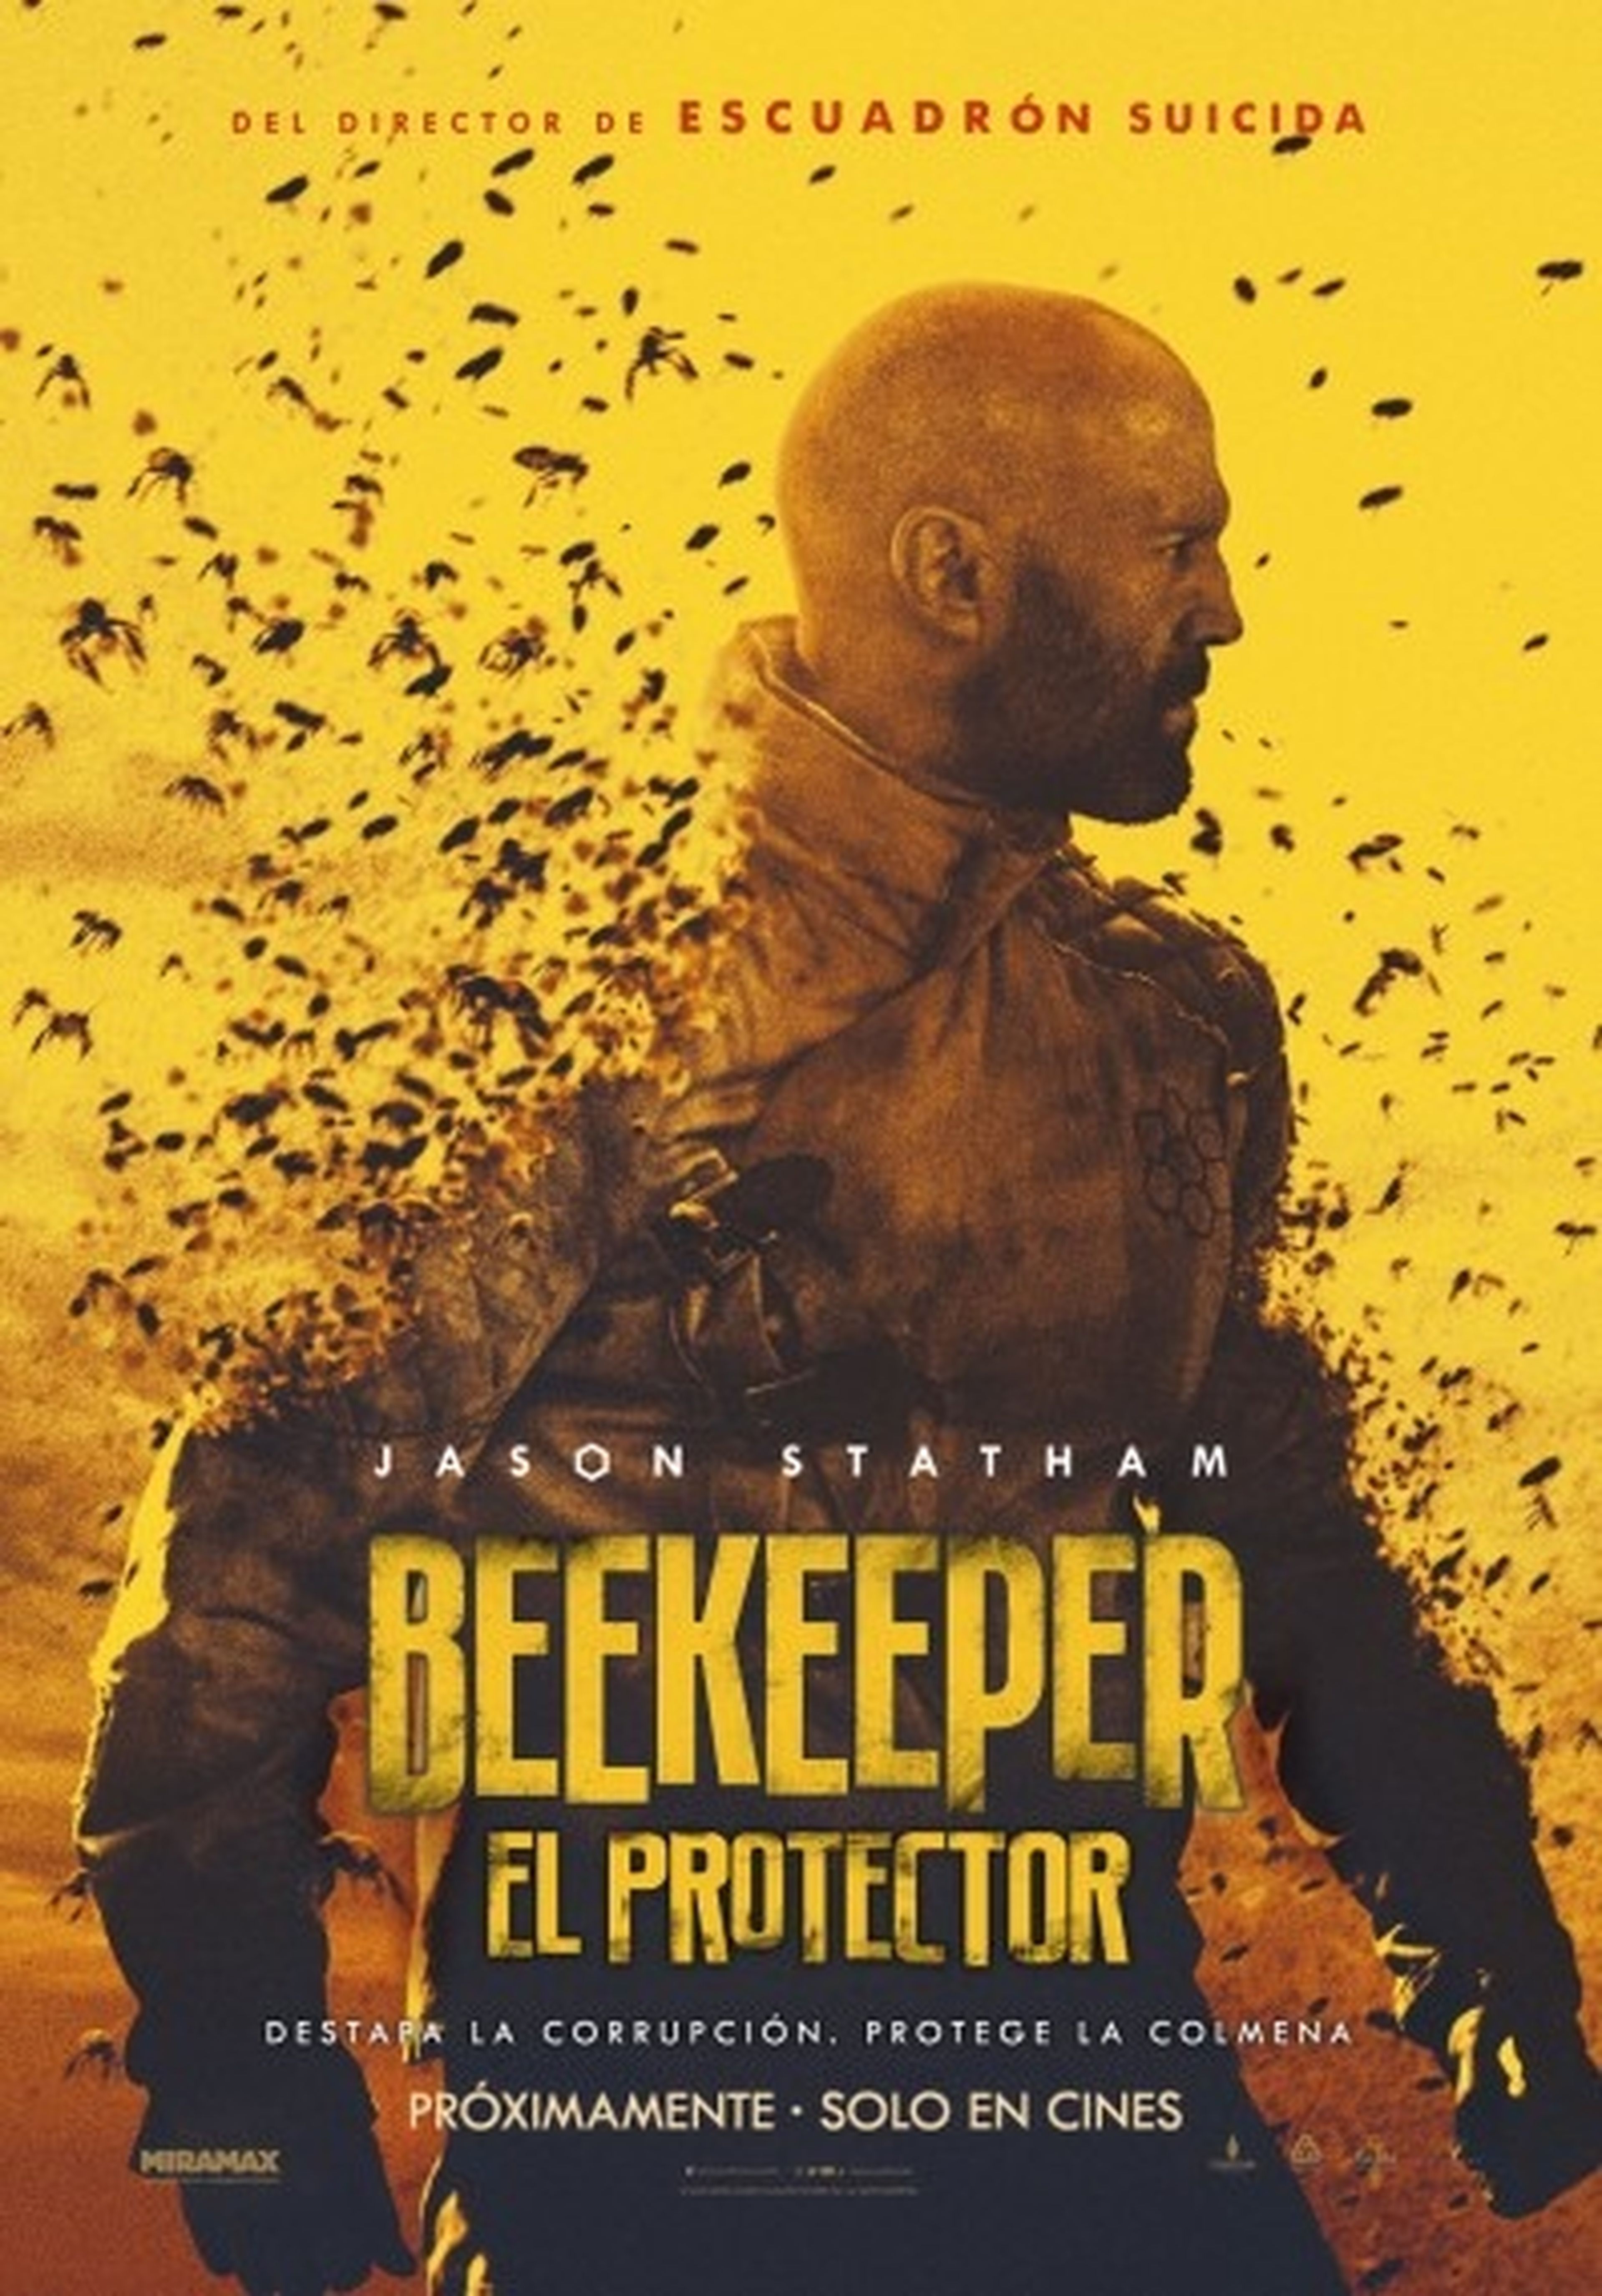 Póster de Beekeeper, la nueva película de acción con Jason Statham que